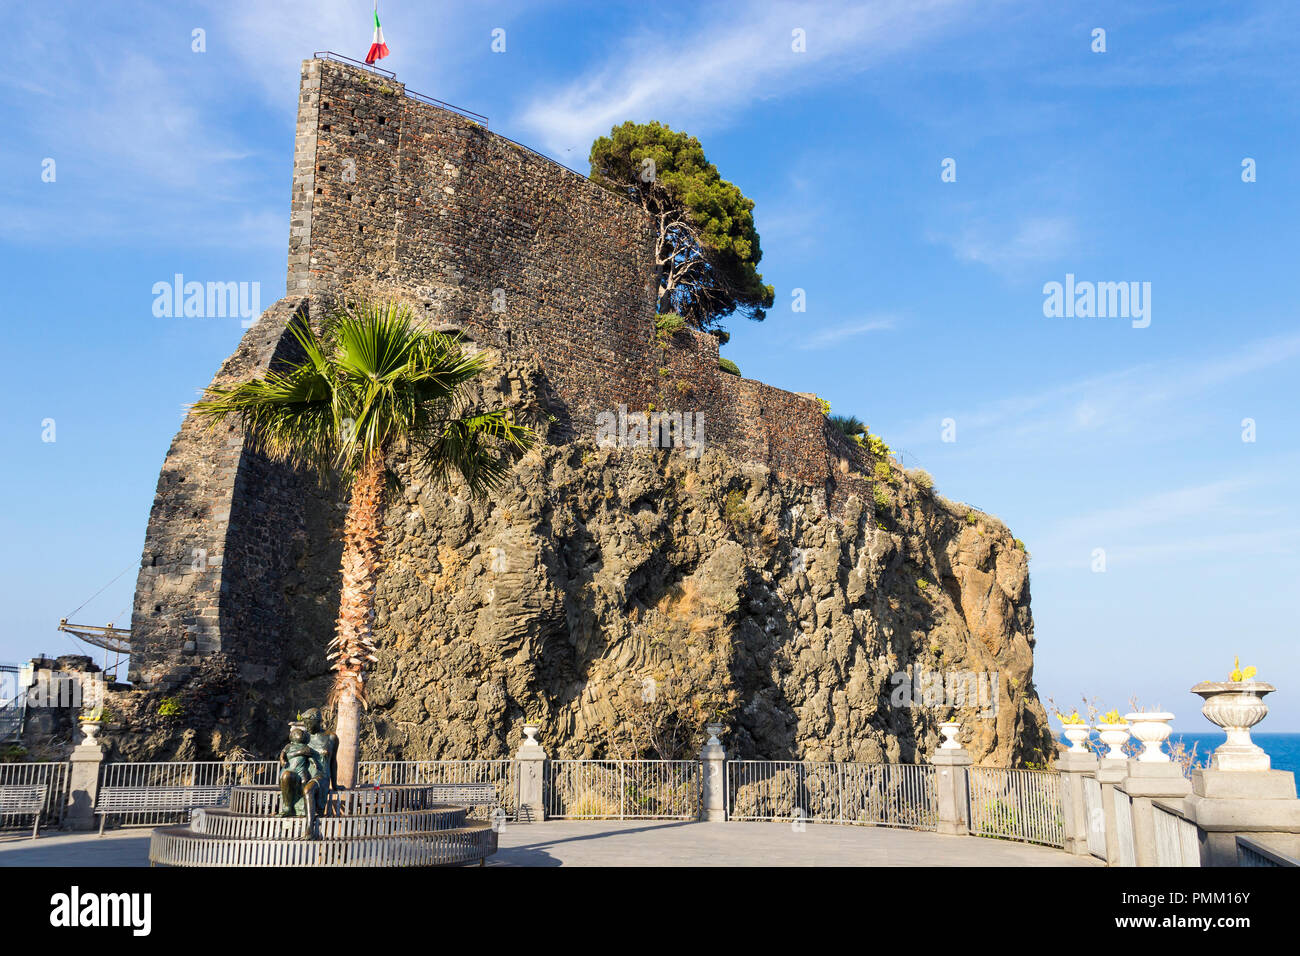 Le antiche mura del Castello Normanno sulla roccia di Aci Castello, Catania, Sicilia, Italia Foto Stock